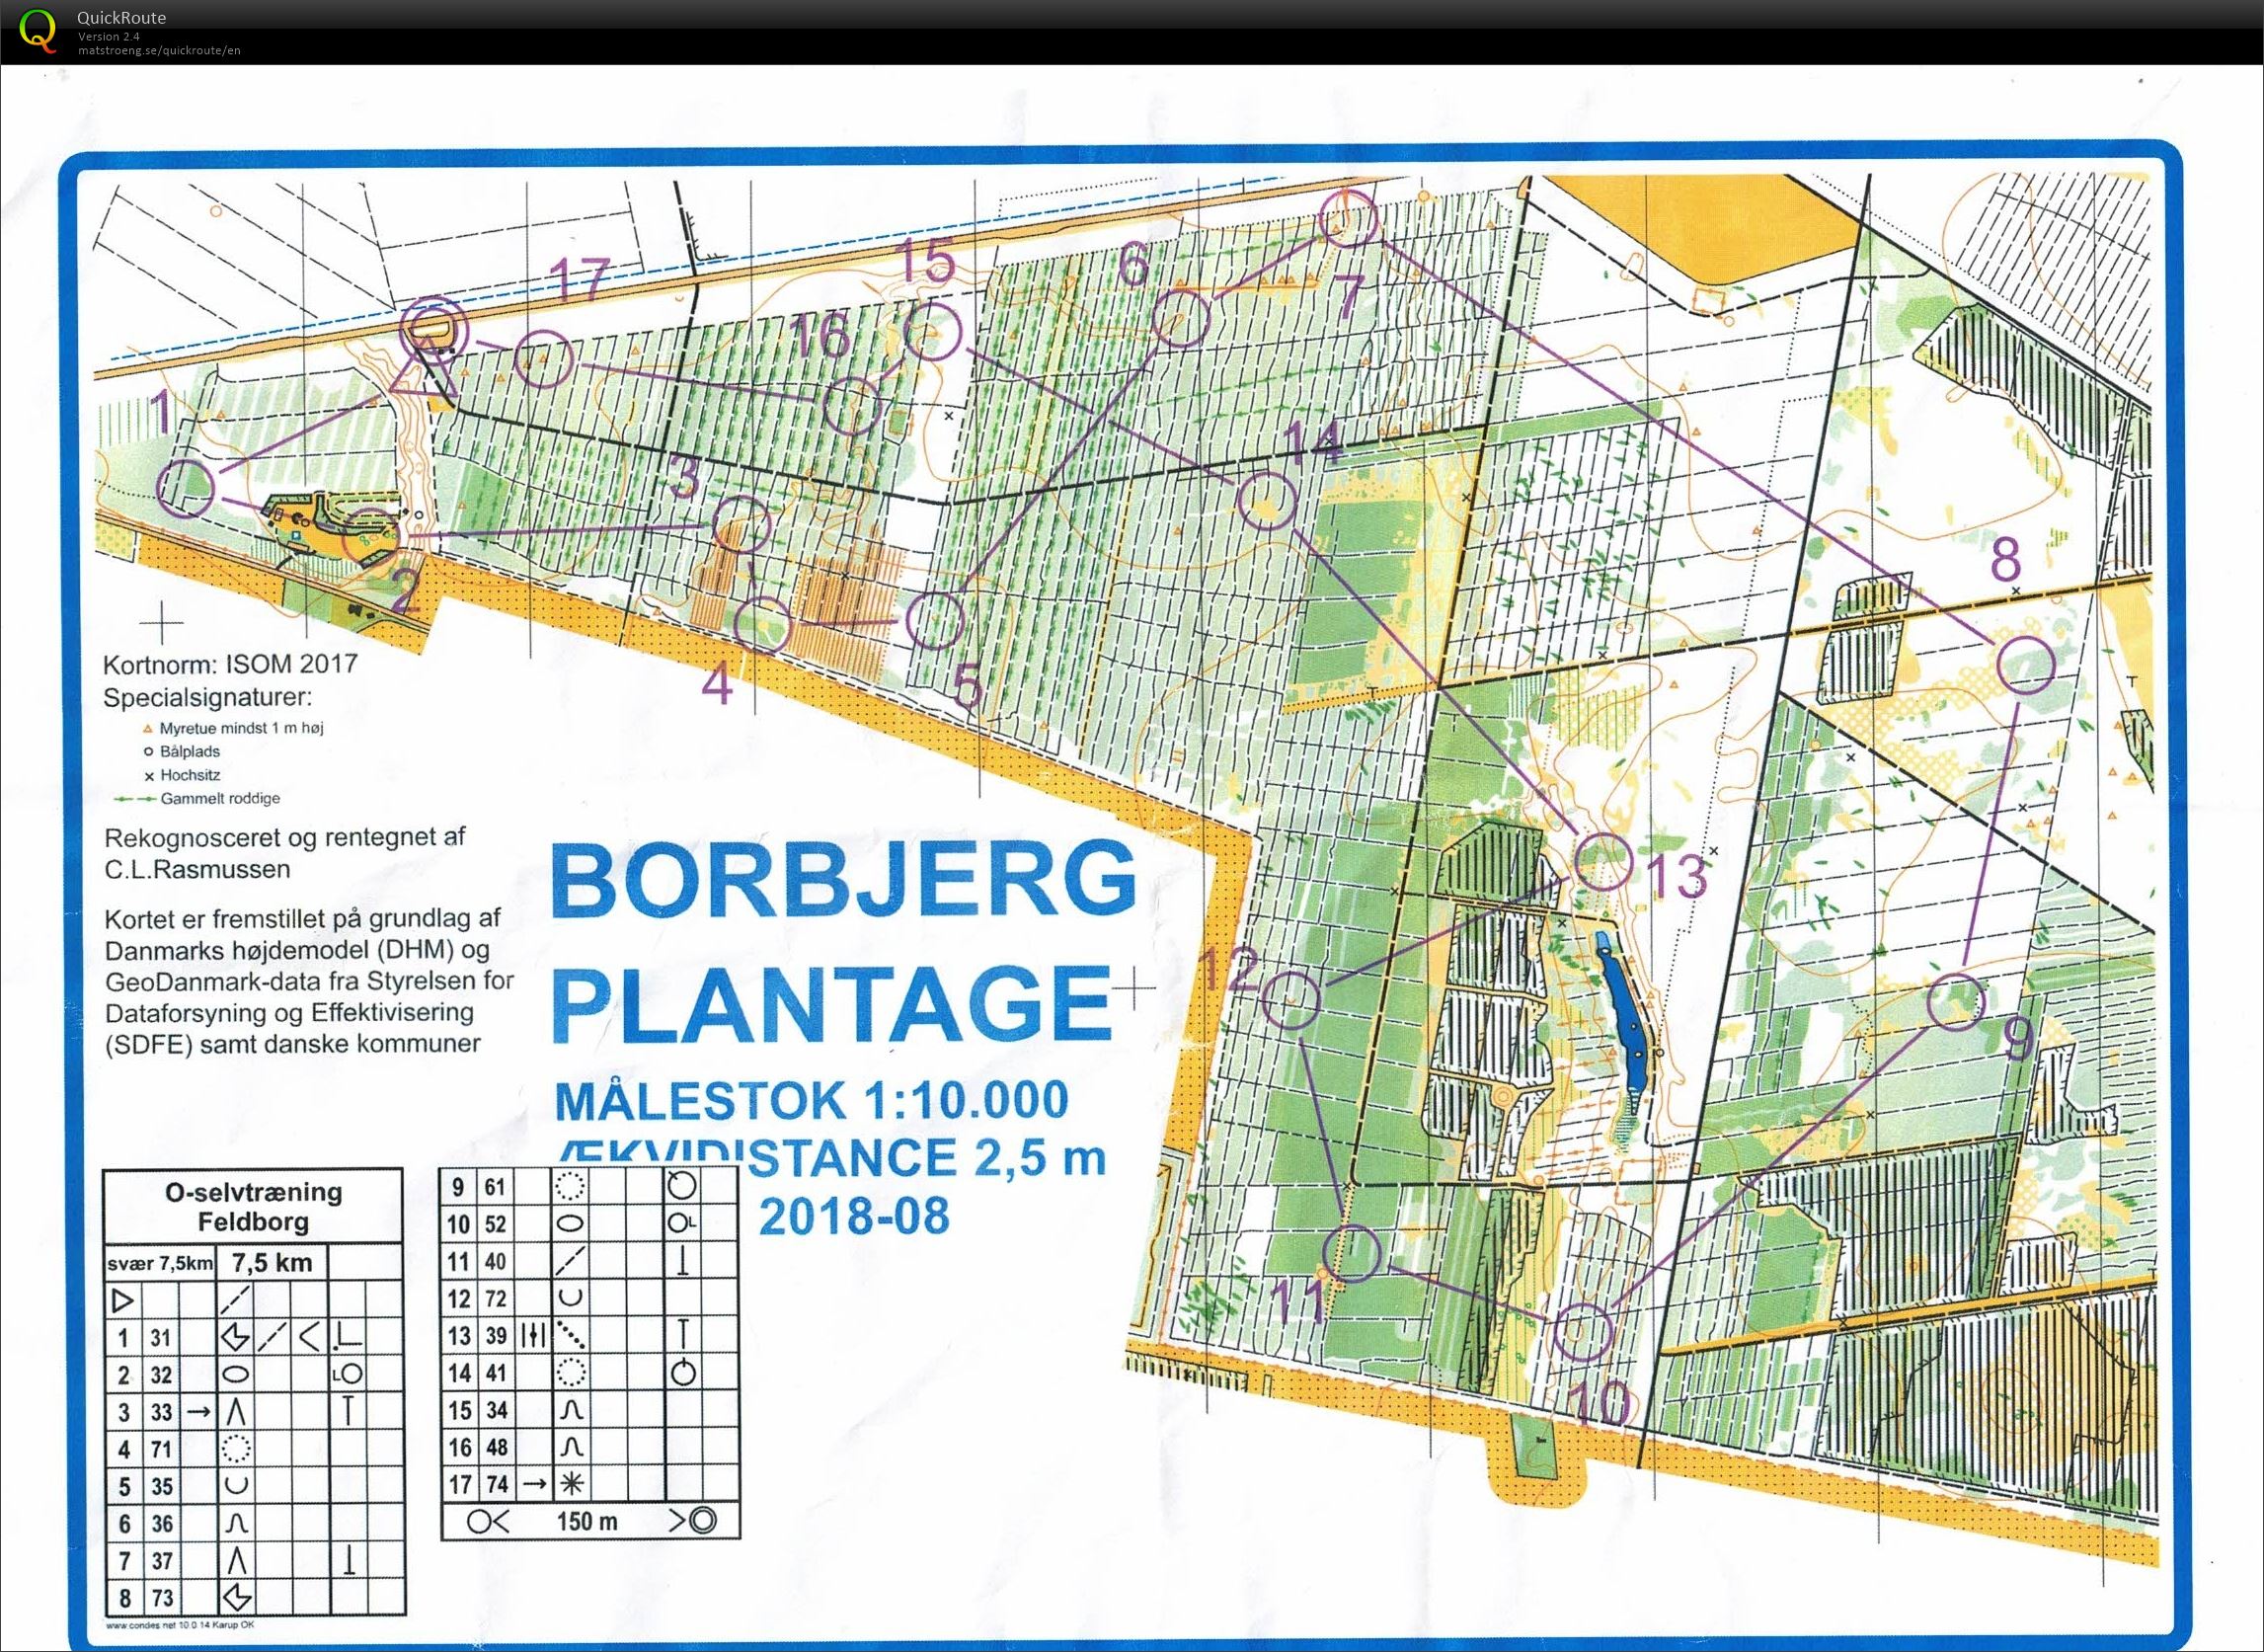 Feldborg nord 7,5 km (2020-05-30)